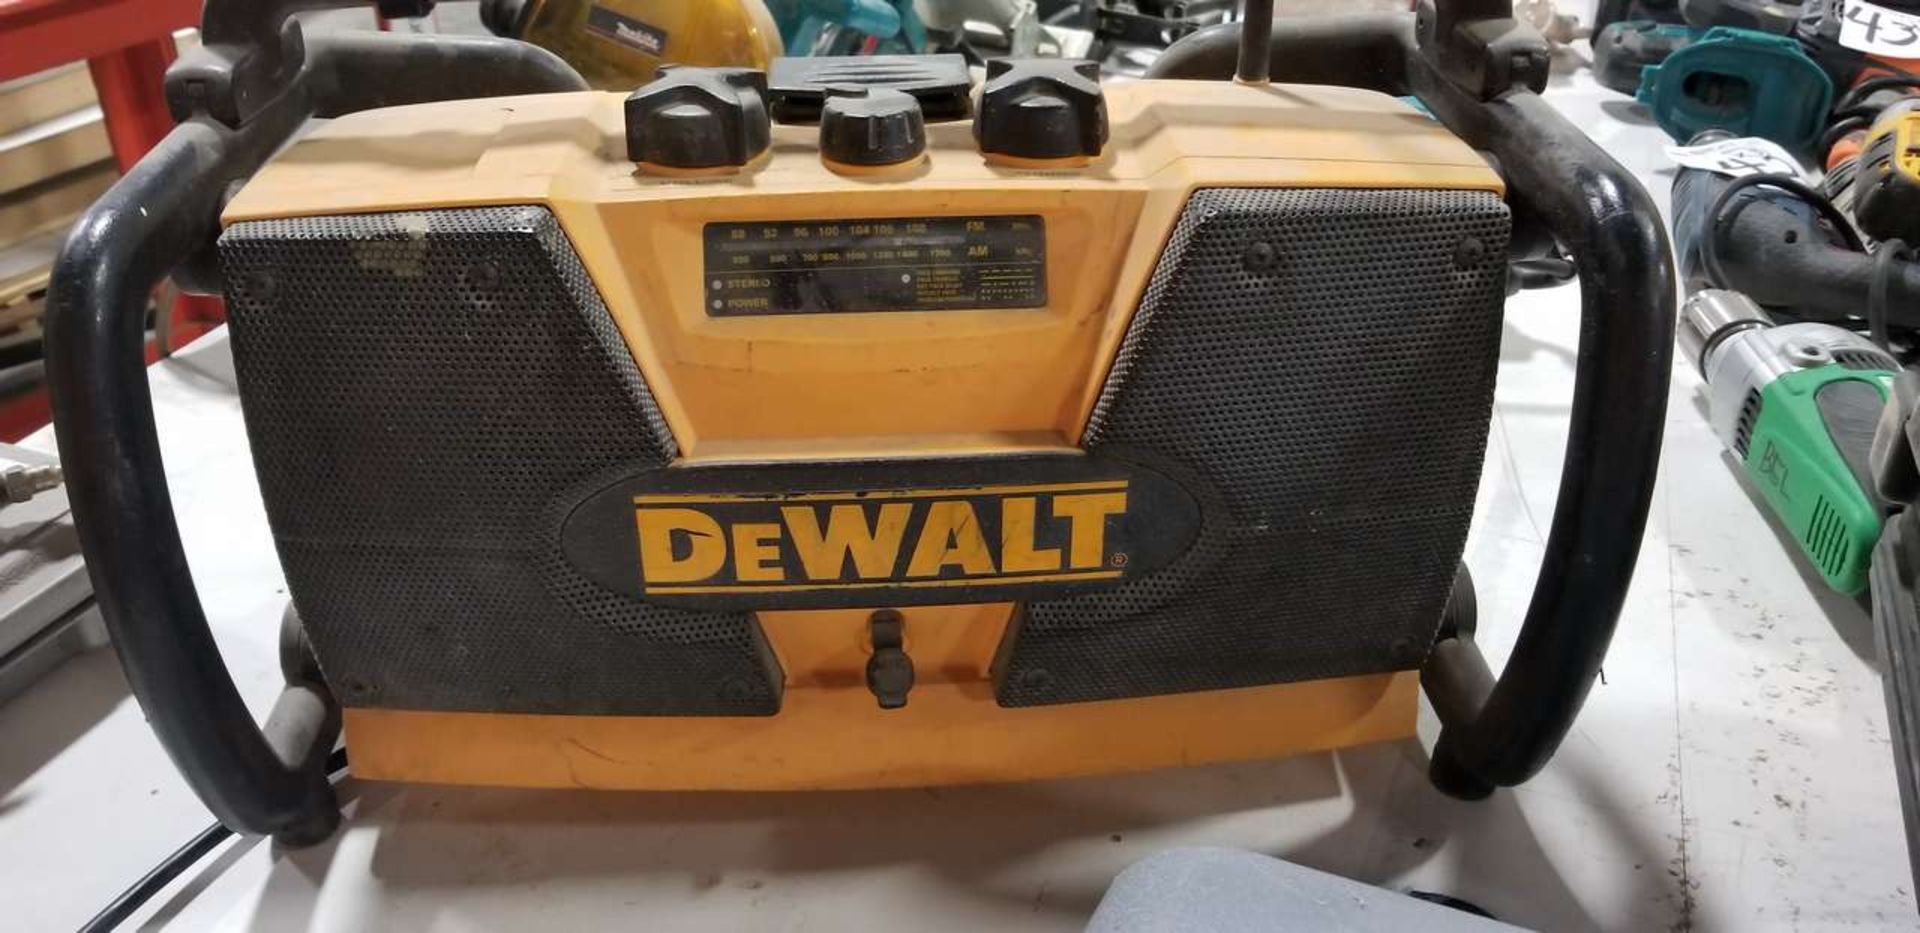 DeWalt DW911 Work Site Radio/Charger